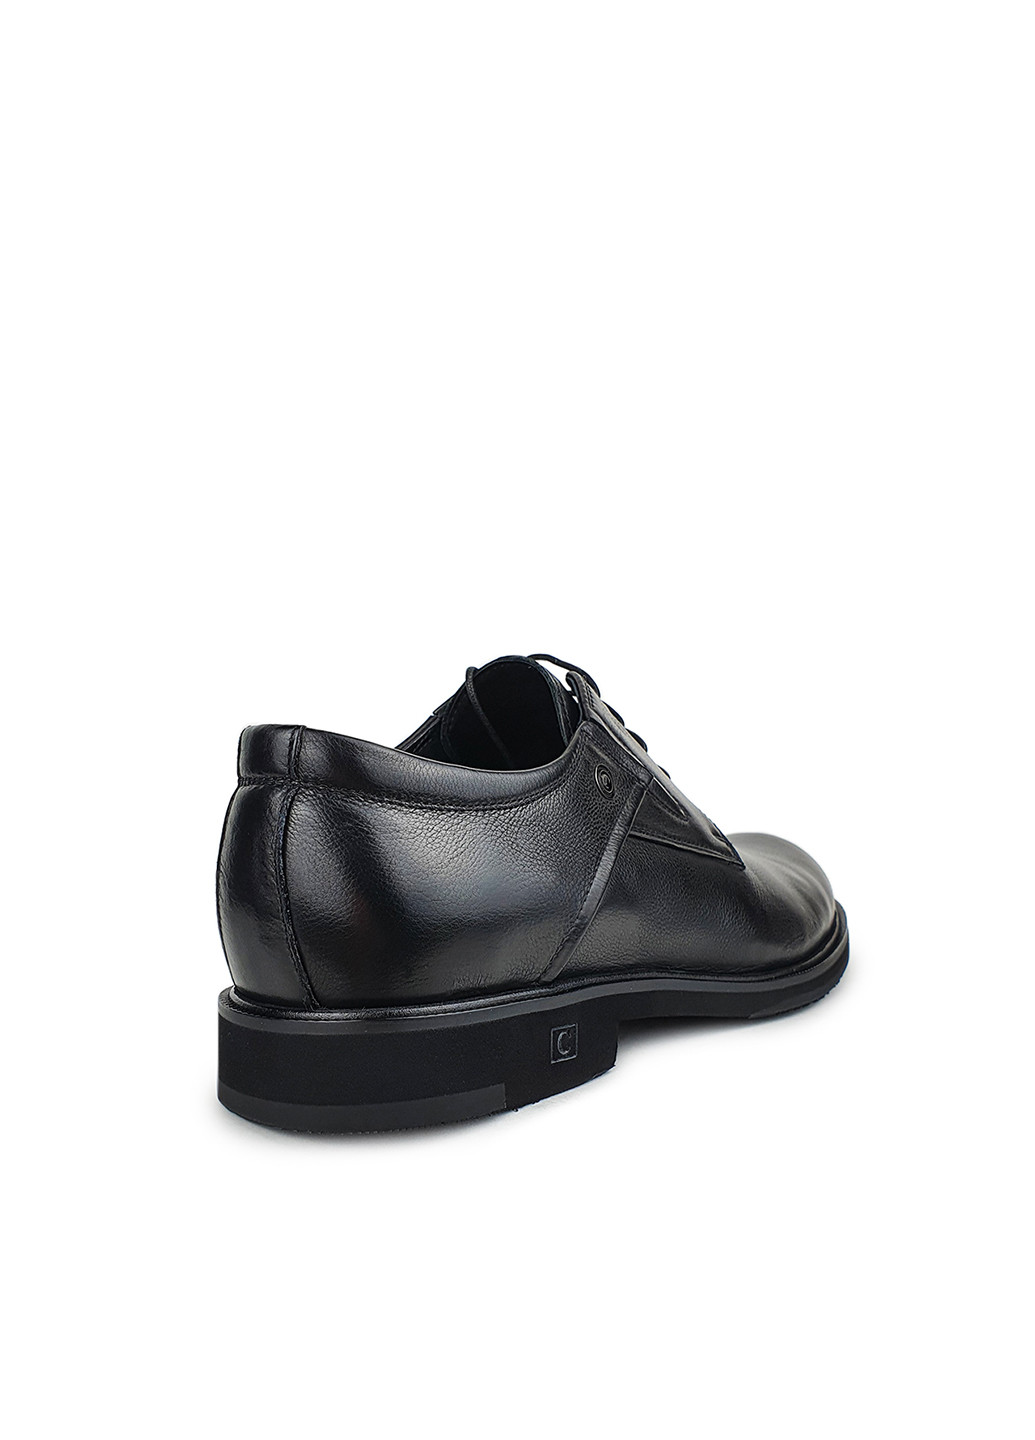 Черные повседневные туфли мужские классические весна осень натуральная кожа черные,, s1977n-7-f07/n,42 Cosottinni